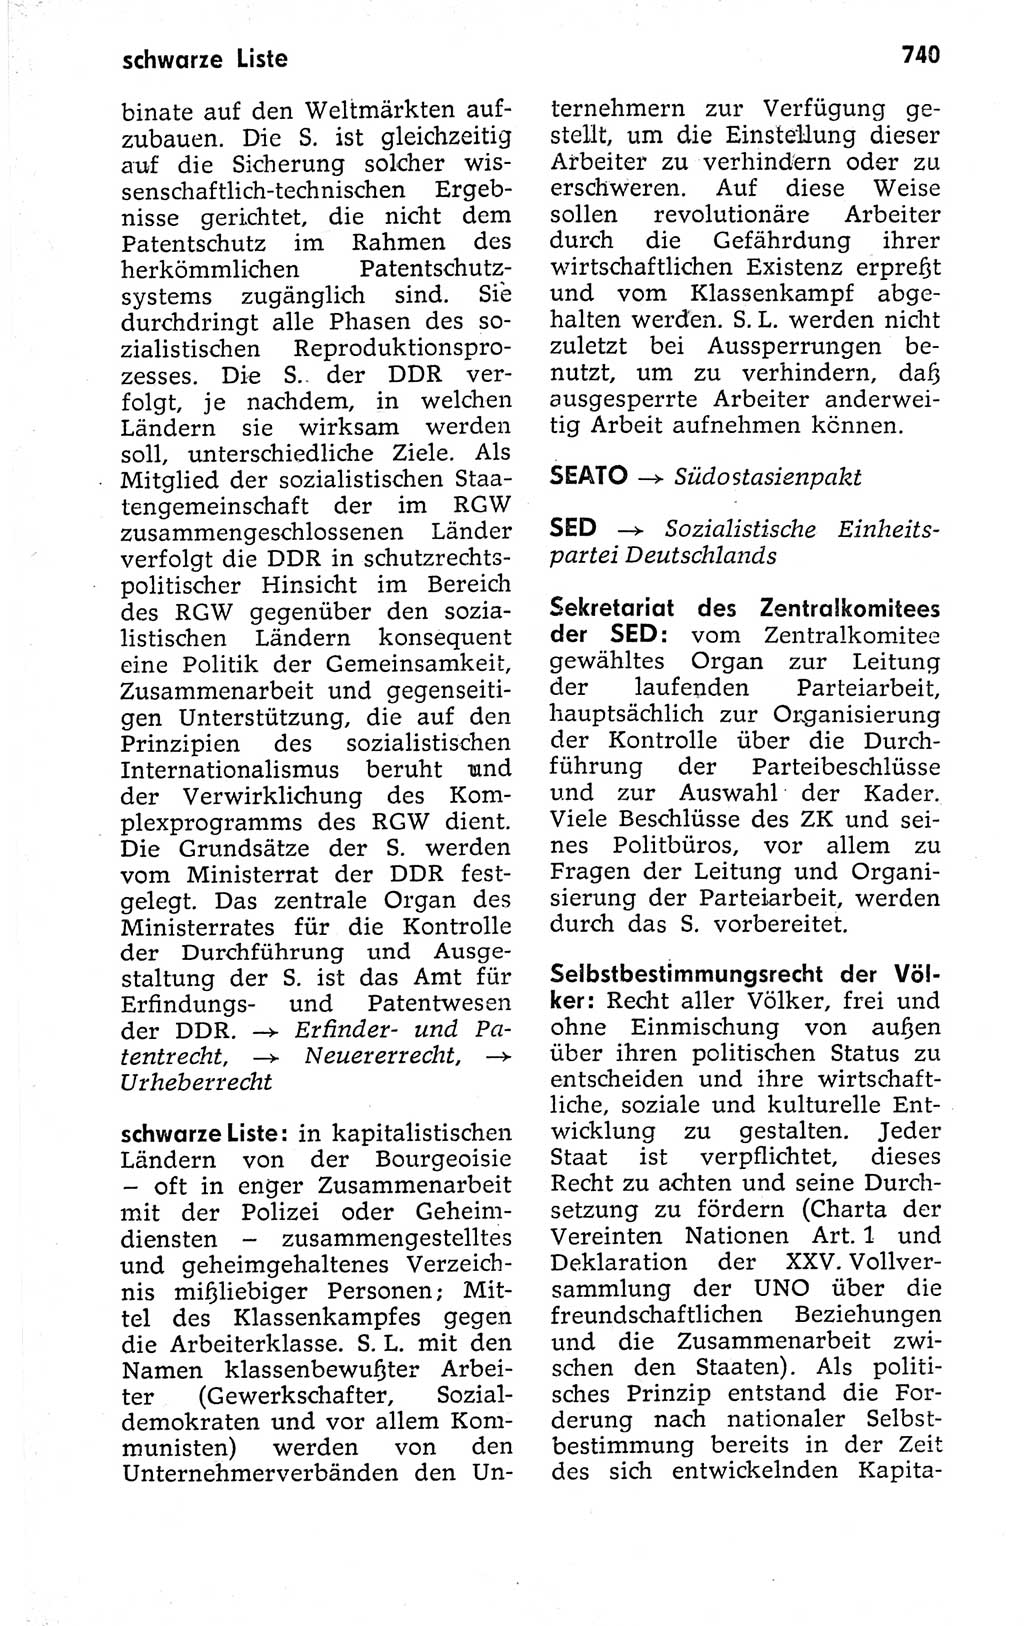 Kleines politisches Wörterbuch [Deutsche Demokratische Republik (DDR)] 1973, Seite 740 (Kl. pol. Wb. DDR 1973, S. 740)